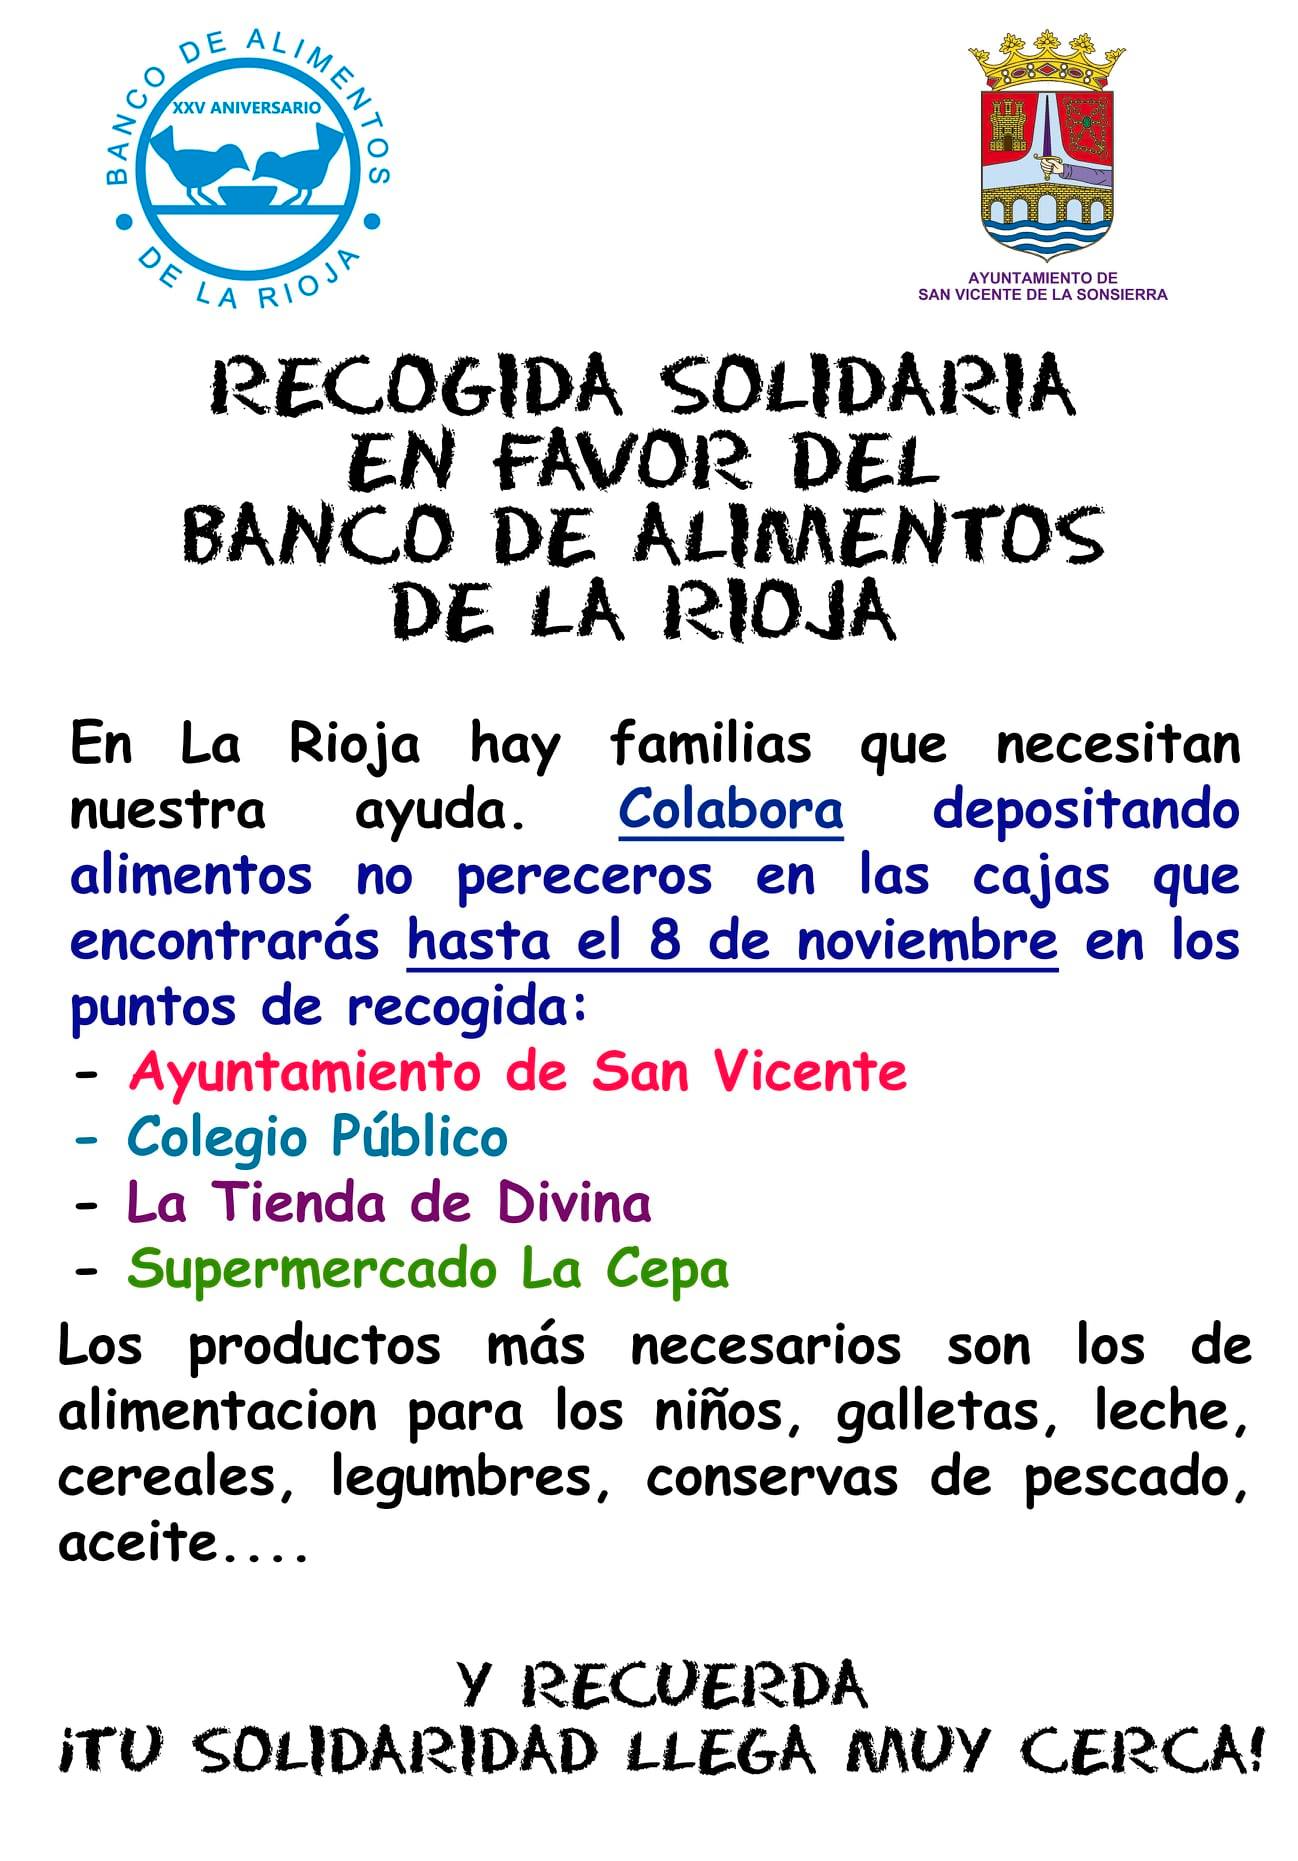 San Vicente de la Sonsierra recoge productos en favor del Banco de Alimentos 1